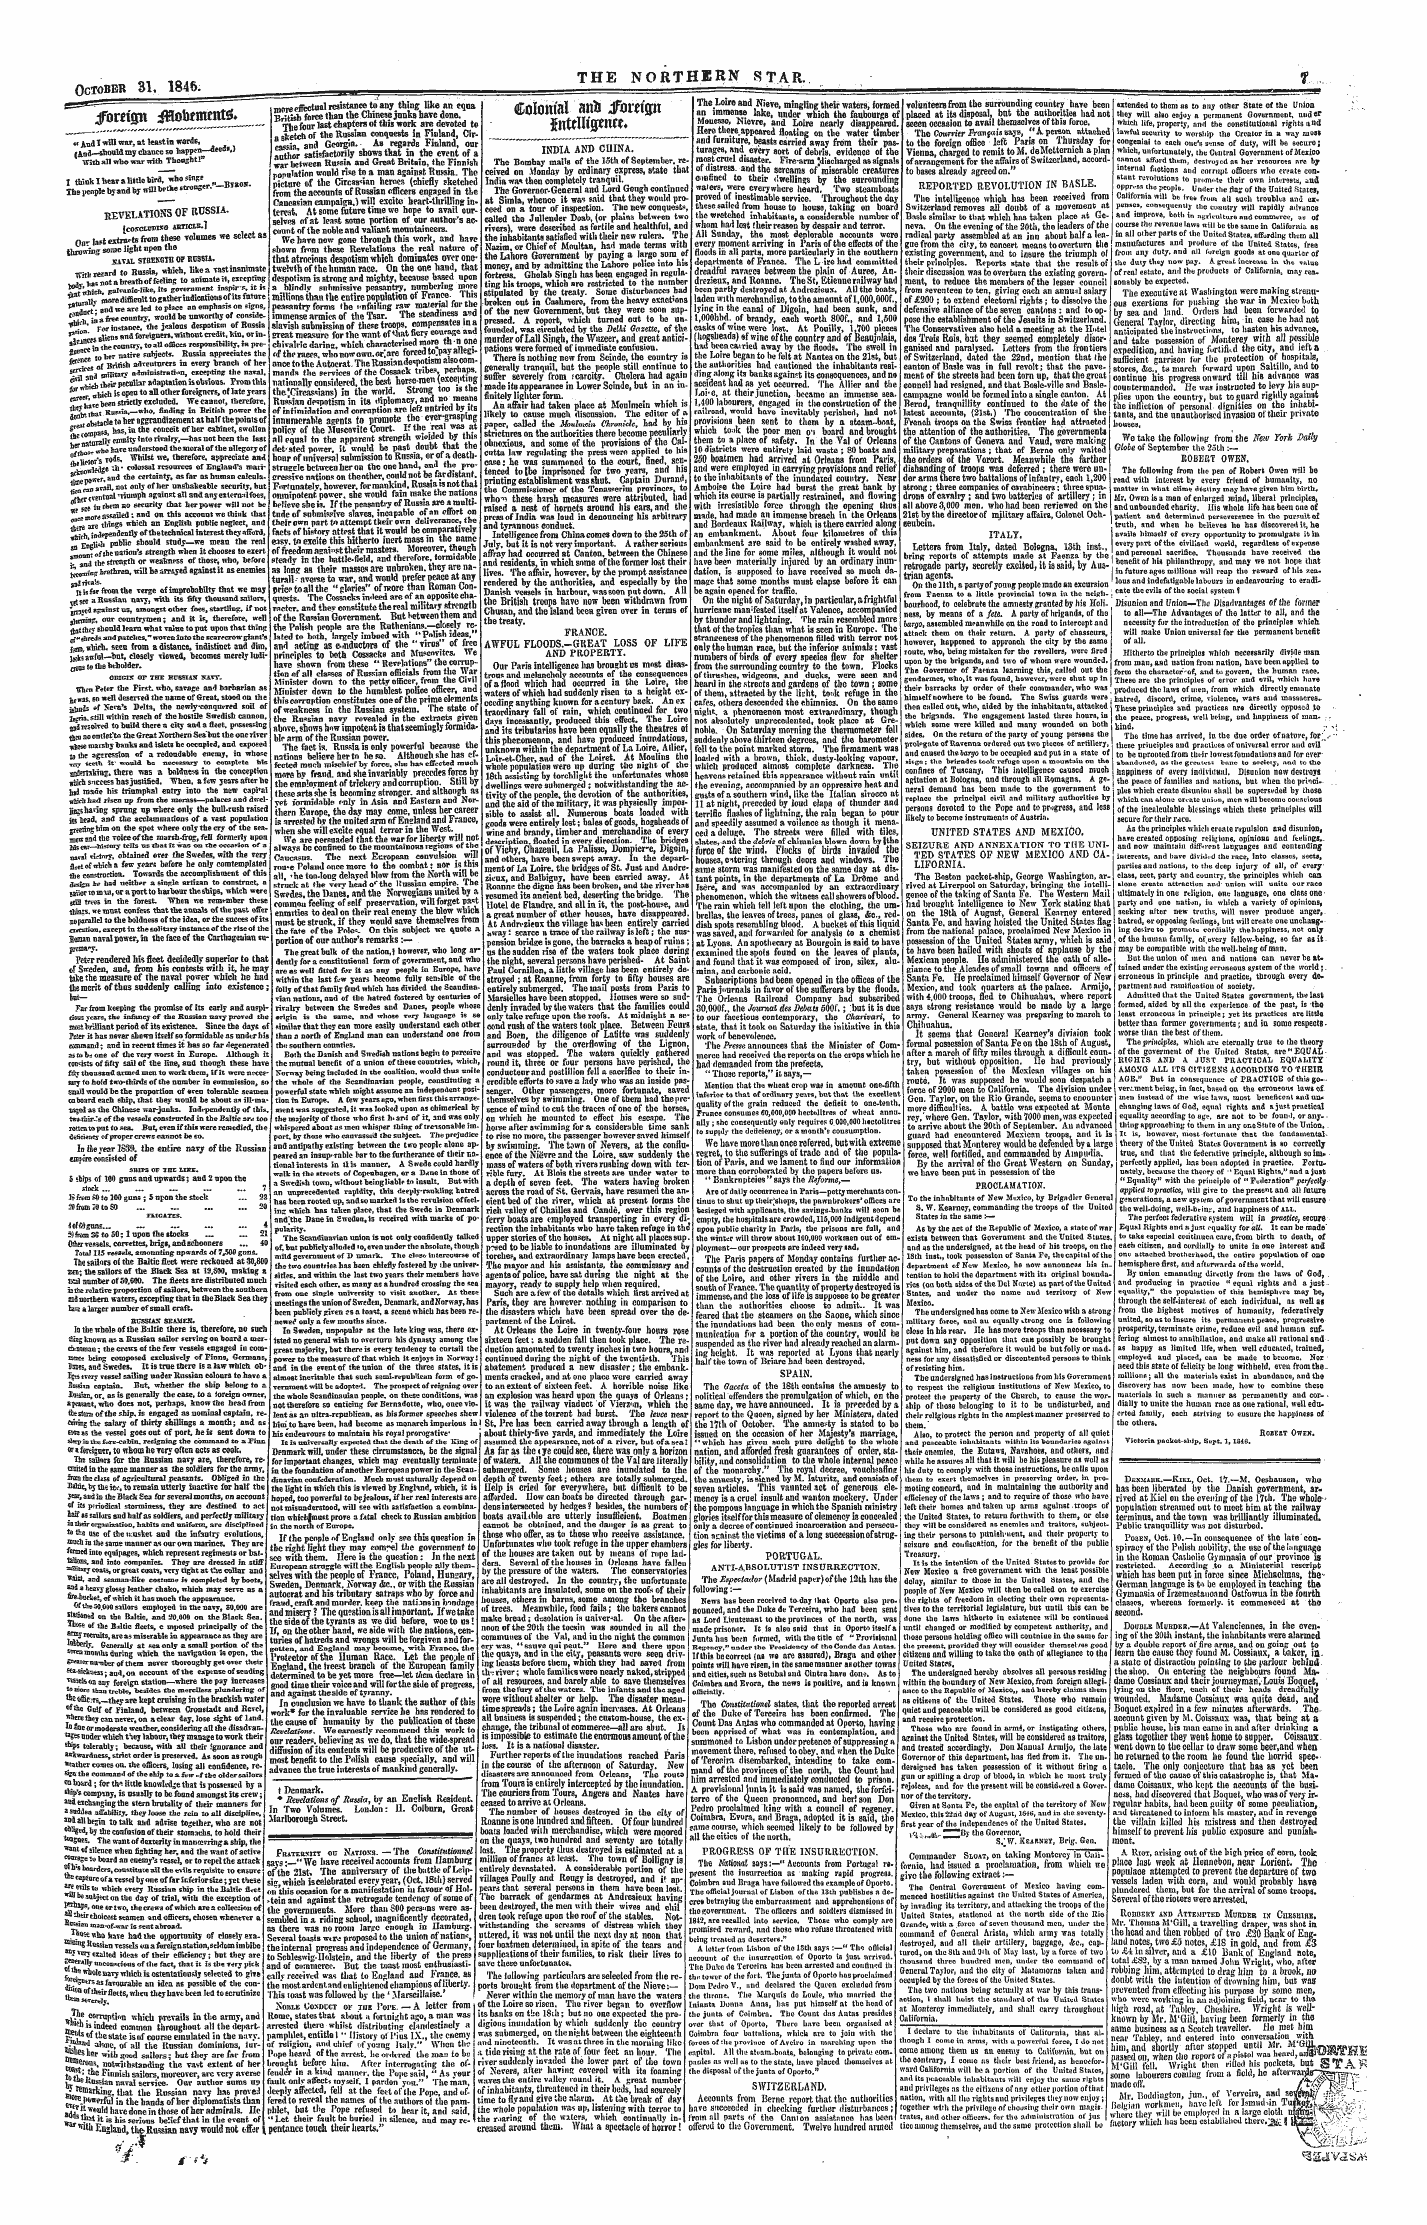 Northern Star (1837-1852): jS F Y, 1st edition - Colonial Aifl) £Brofgii Gntrnigeme*